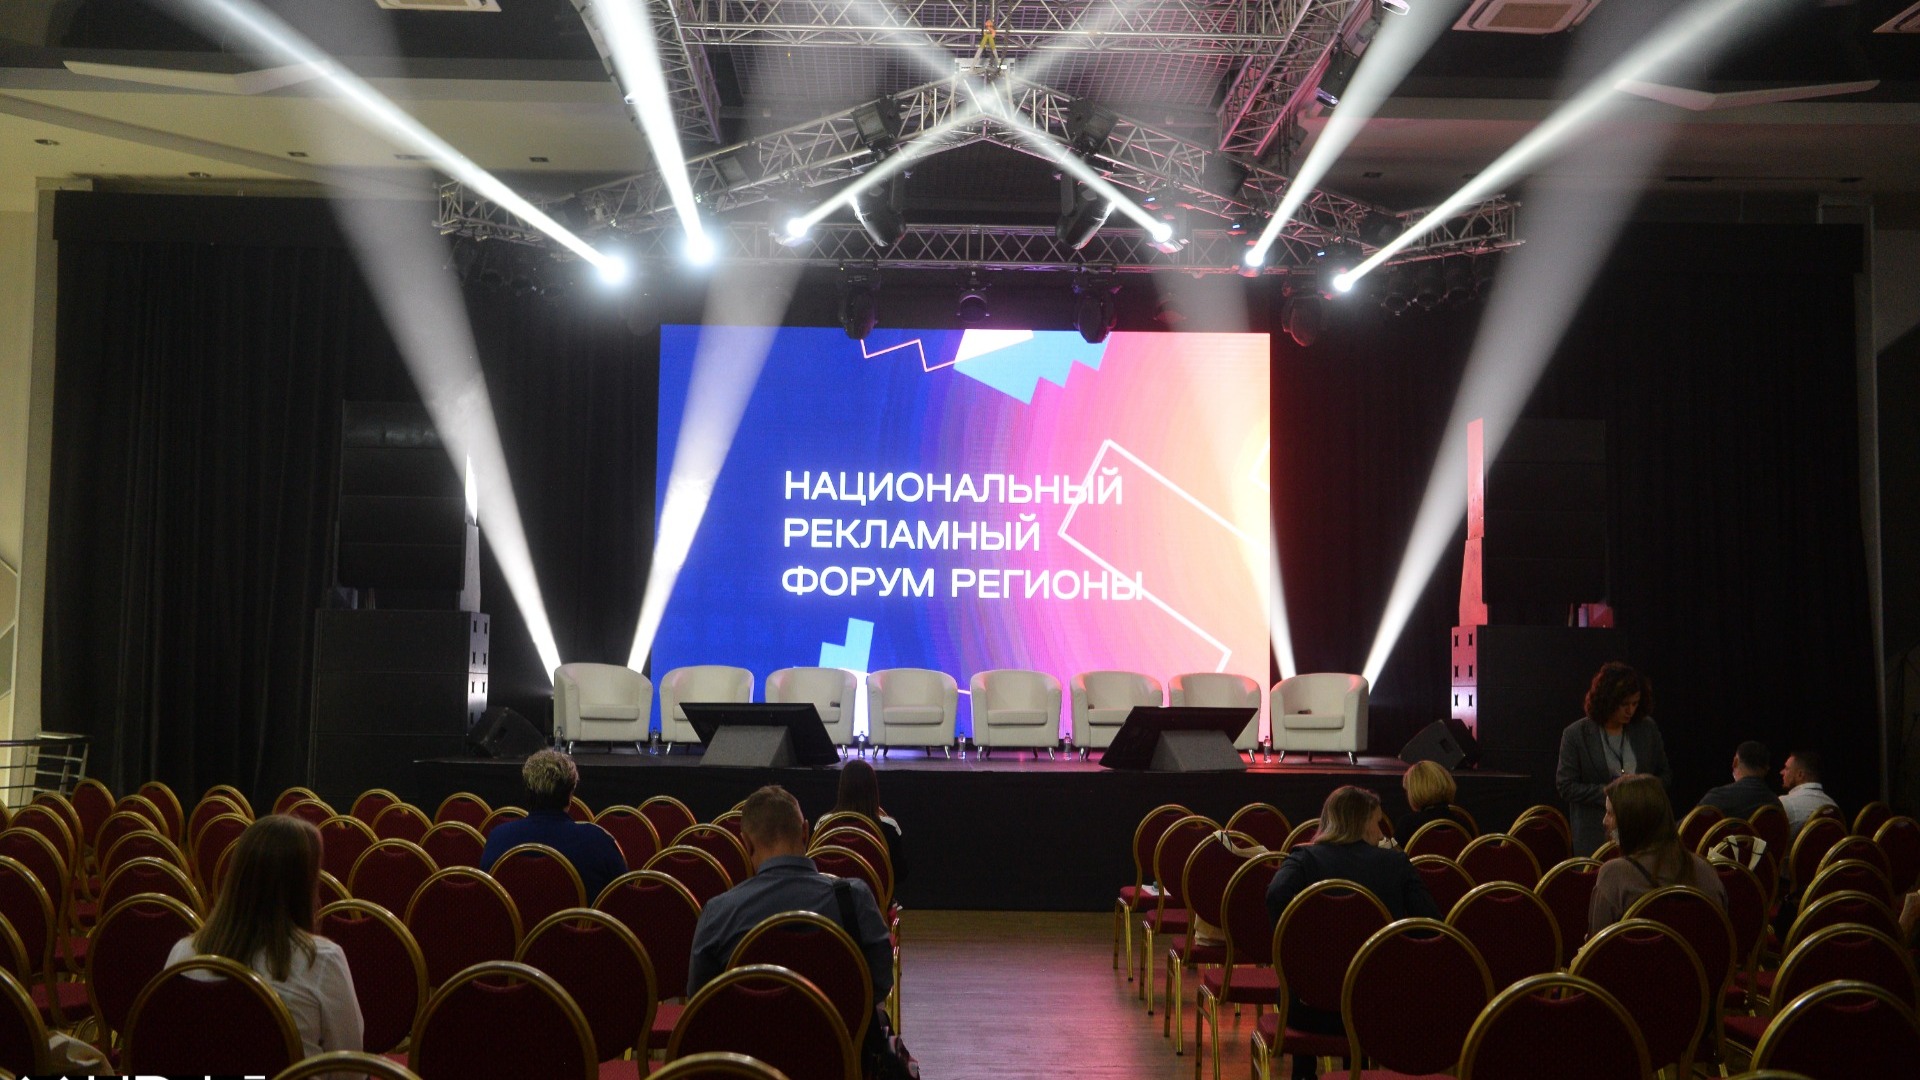 14 сентября в Екатеринбурге начнется национальный рекламный форум «Регионы»